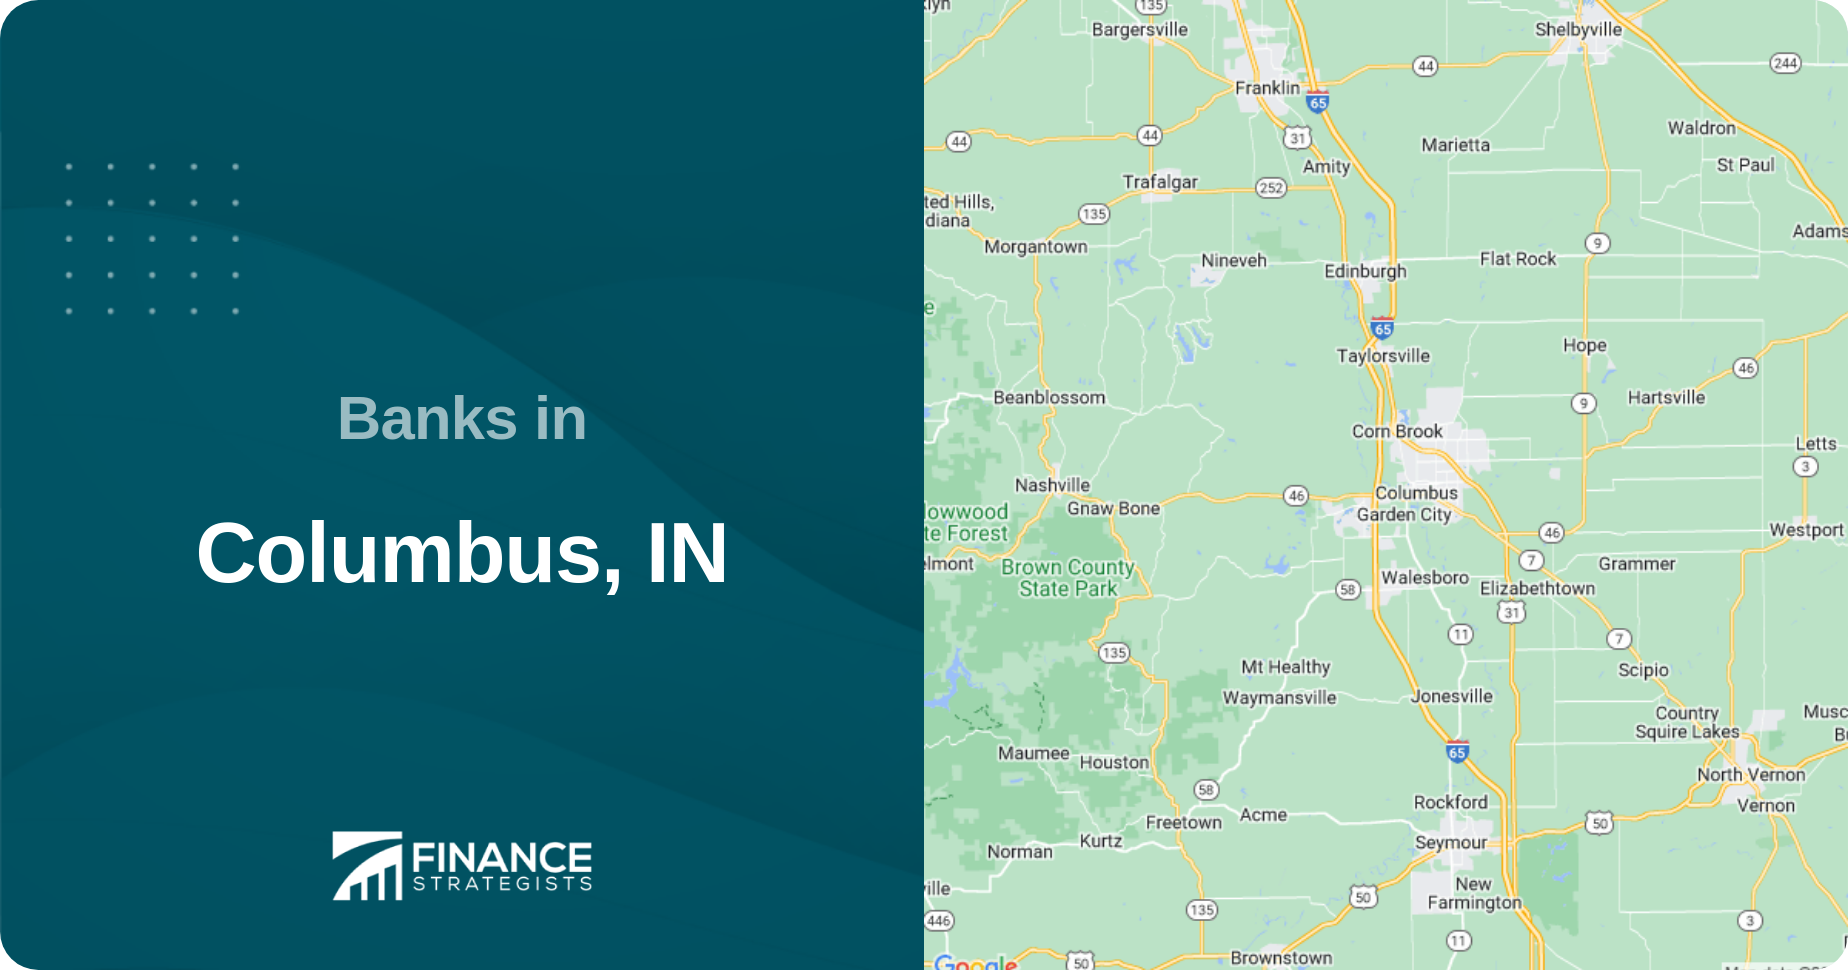 Banks in Columbus, IN